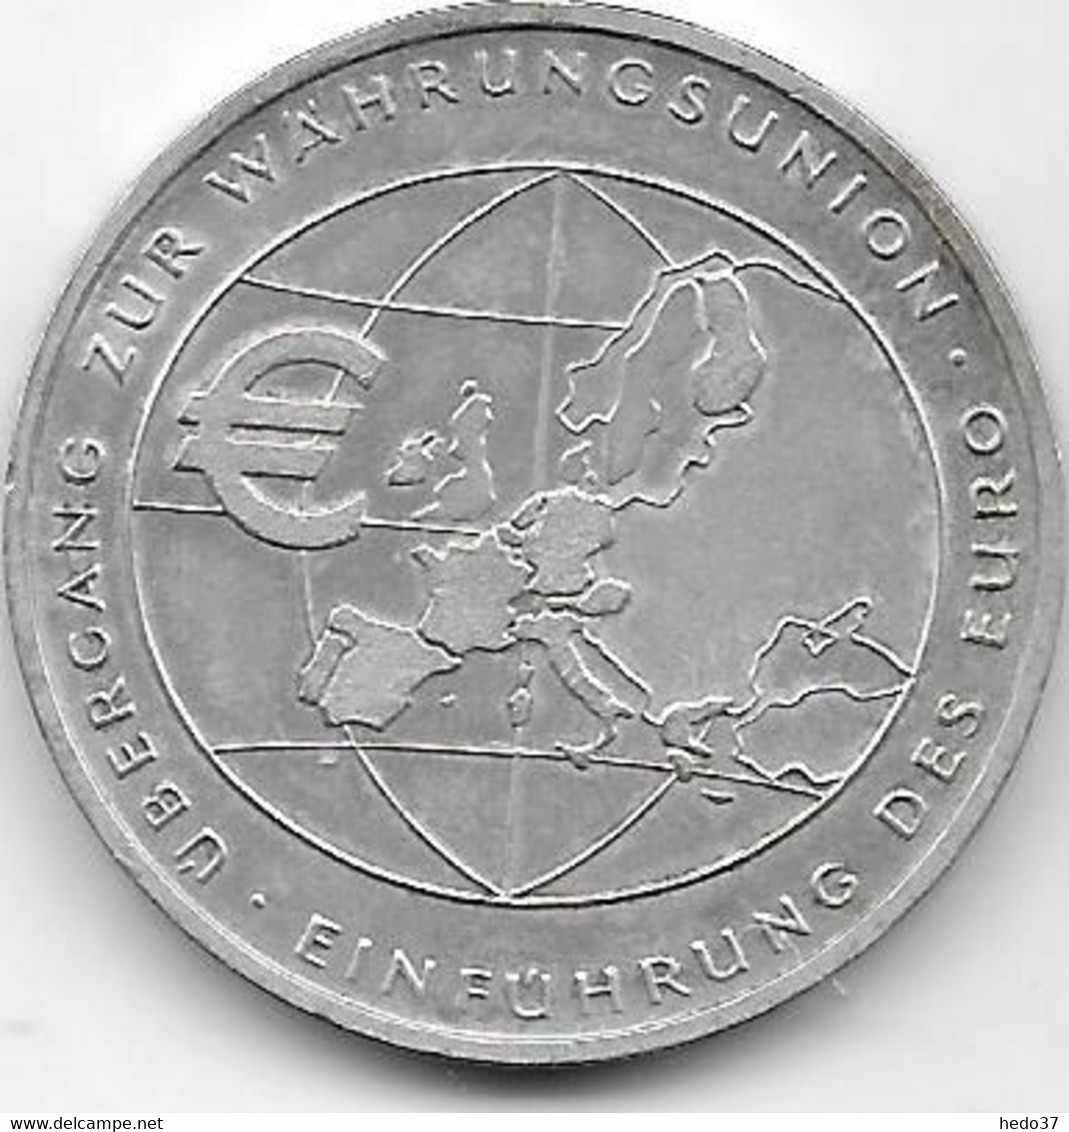 Allemagne - 10 Euro € 2002 - Argent - Gedenkmünzen